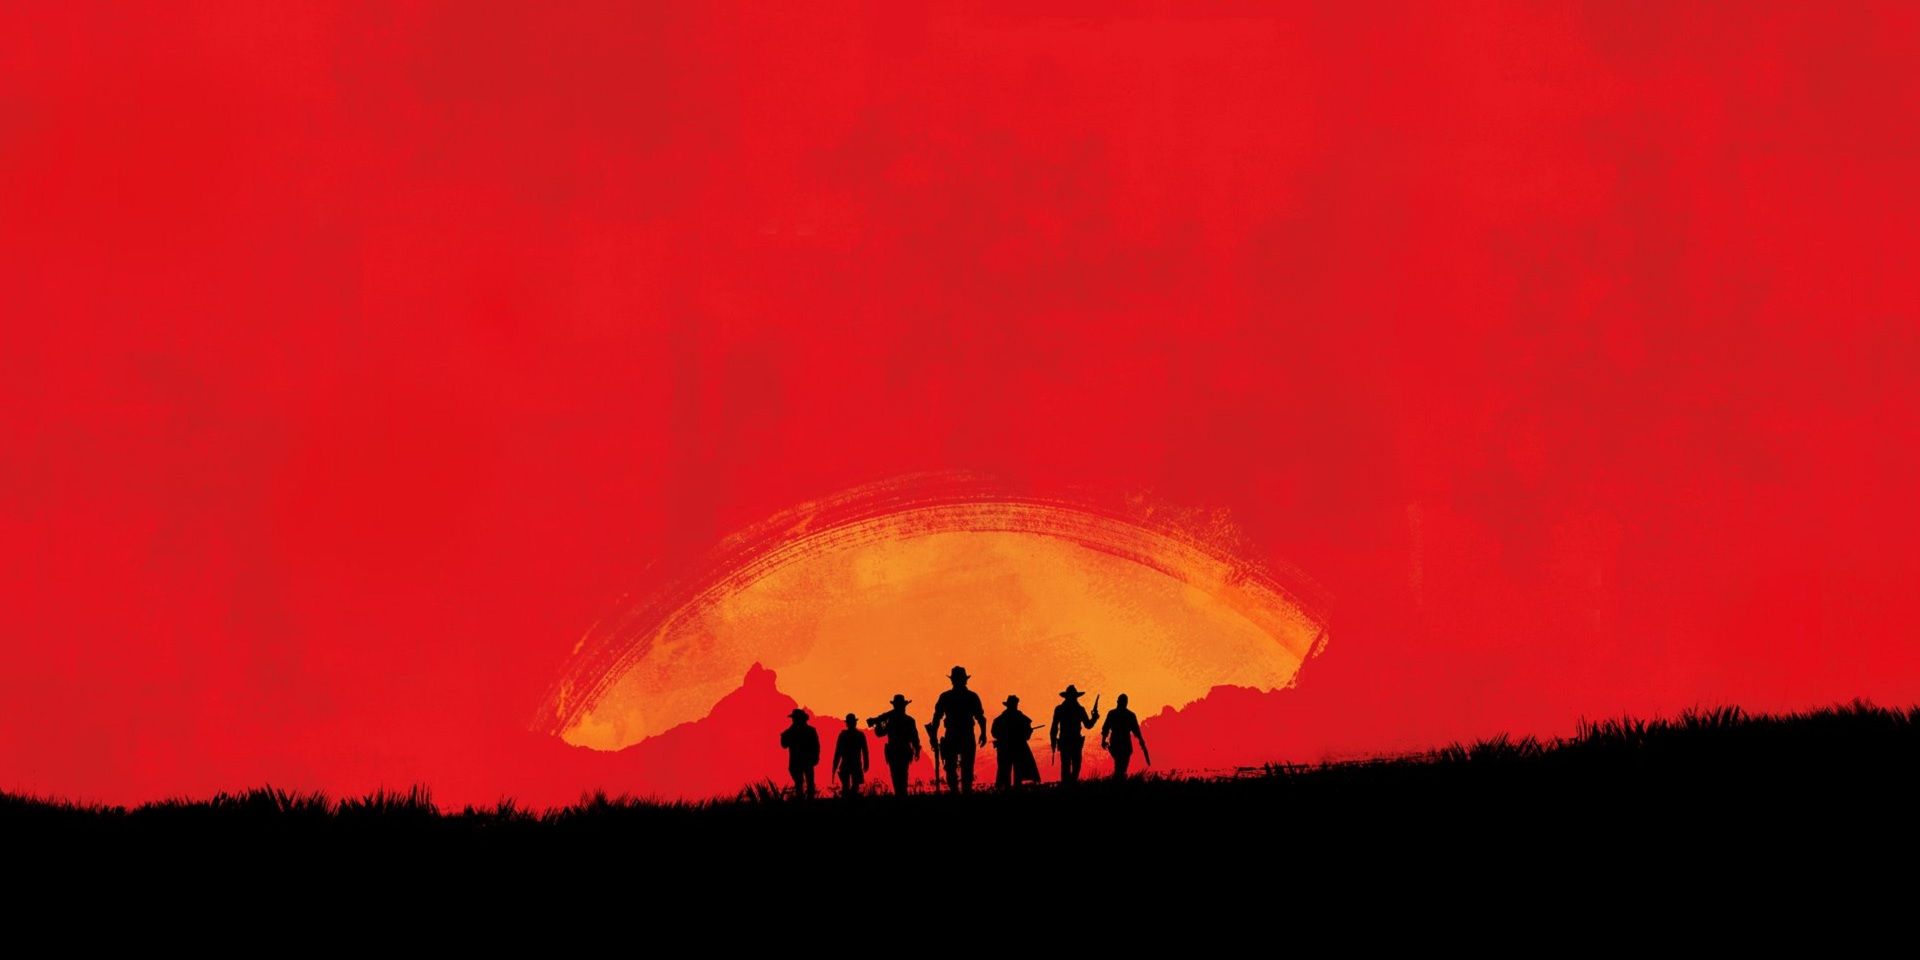 Red Dead 3 teaser art